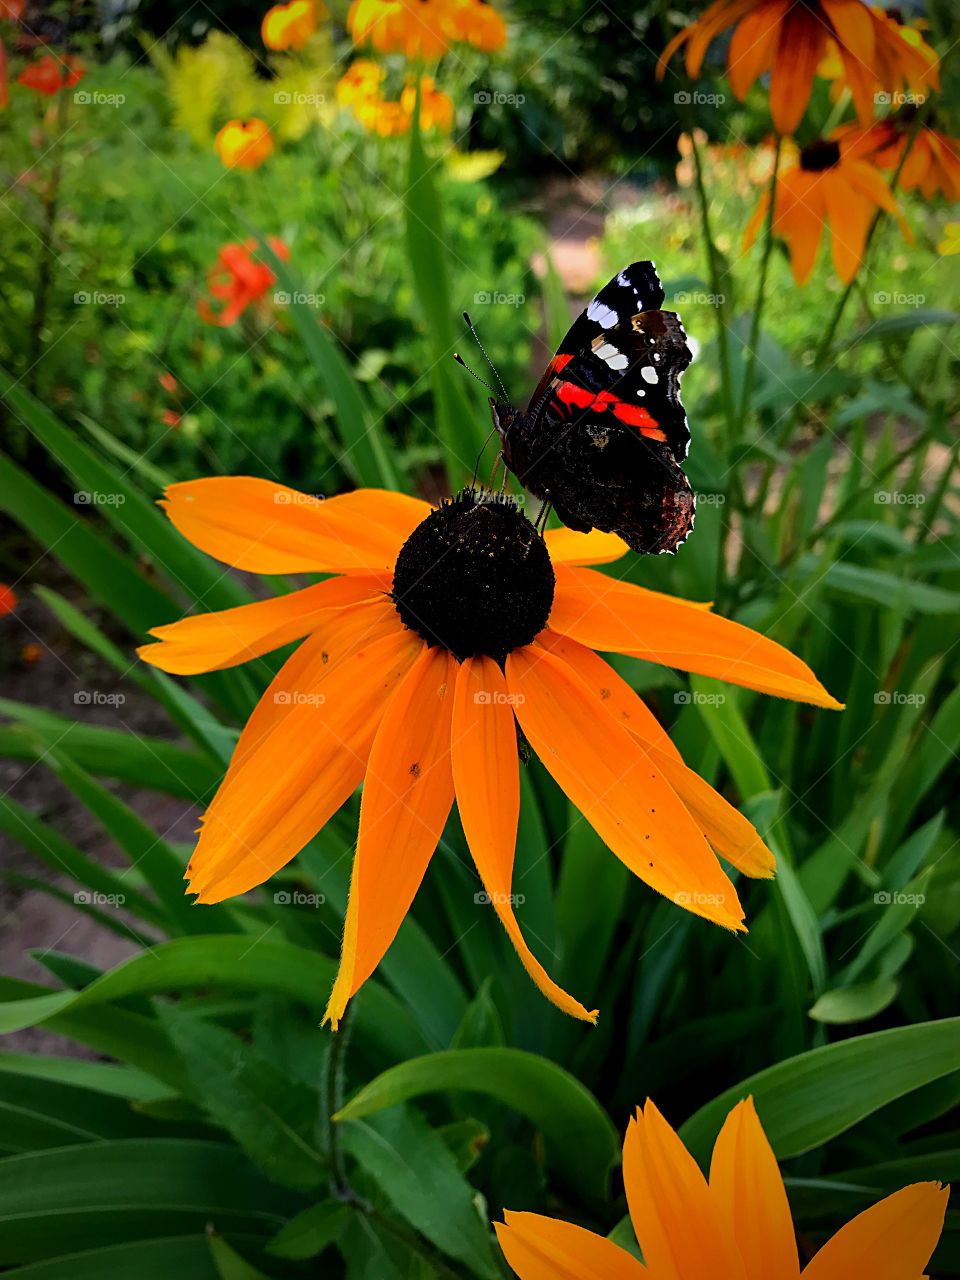 butterfly on a big orange flower